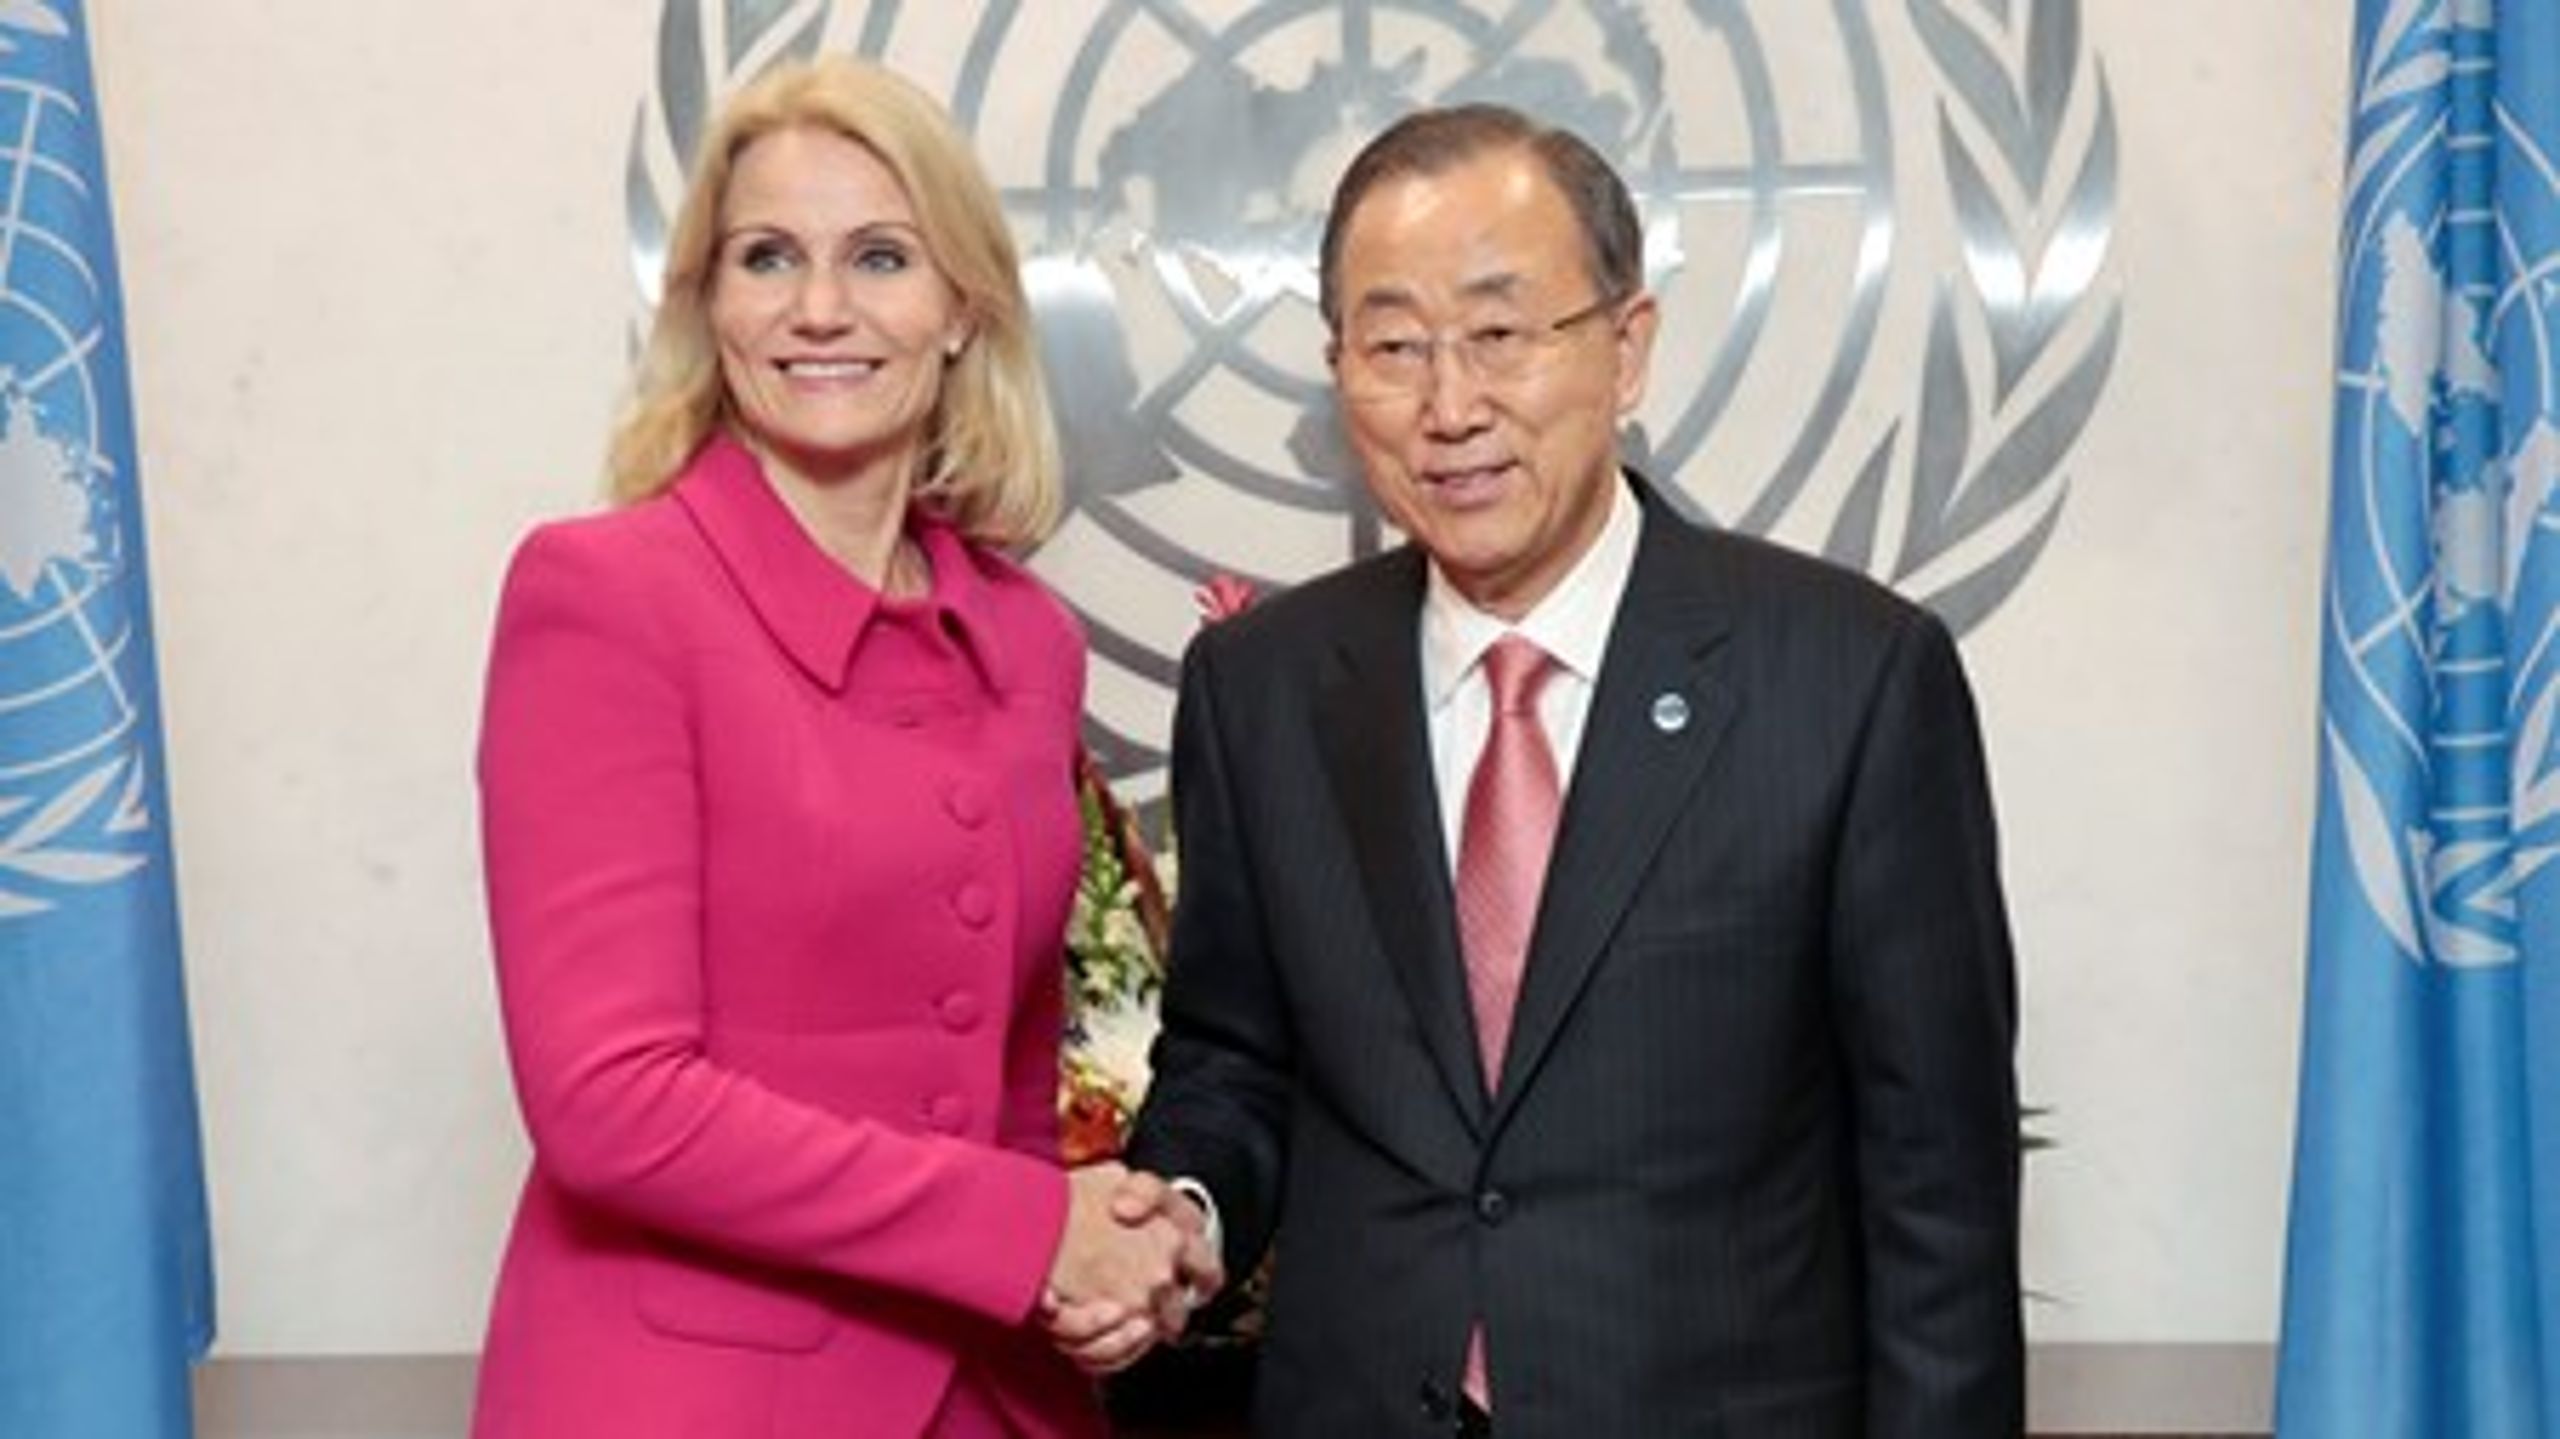 Daværende statsminister&nbsp;Helle Thorning-Schmidt tilbage i september 2014&nbsp;sammen med FN-generalsekretær Ban ki-Moon, der i sidste ende bestemmer, hvem der bliver ny FN-flygtningehøjkommissær.